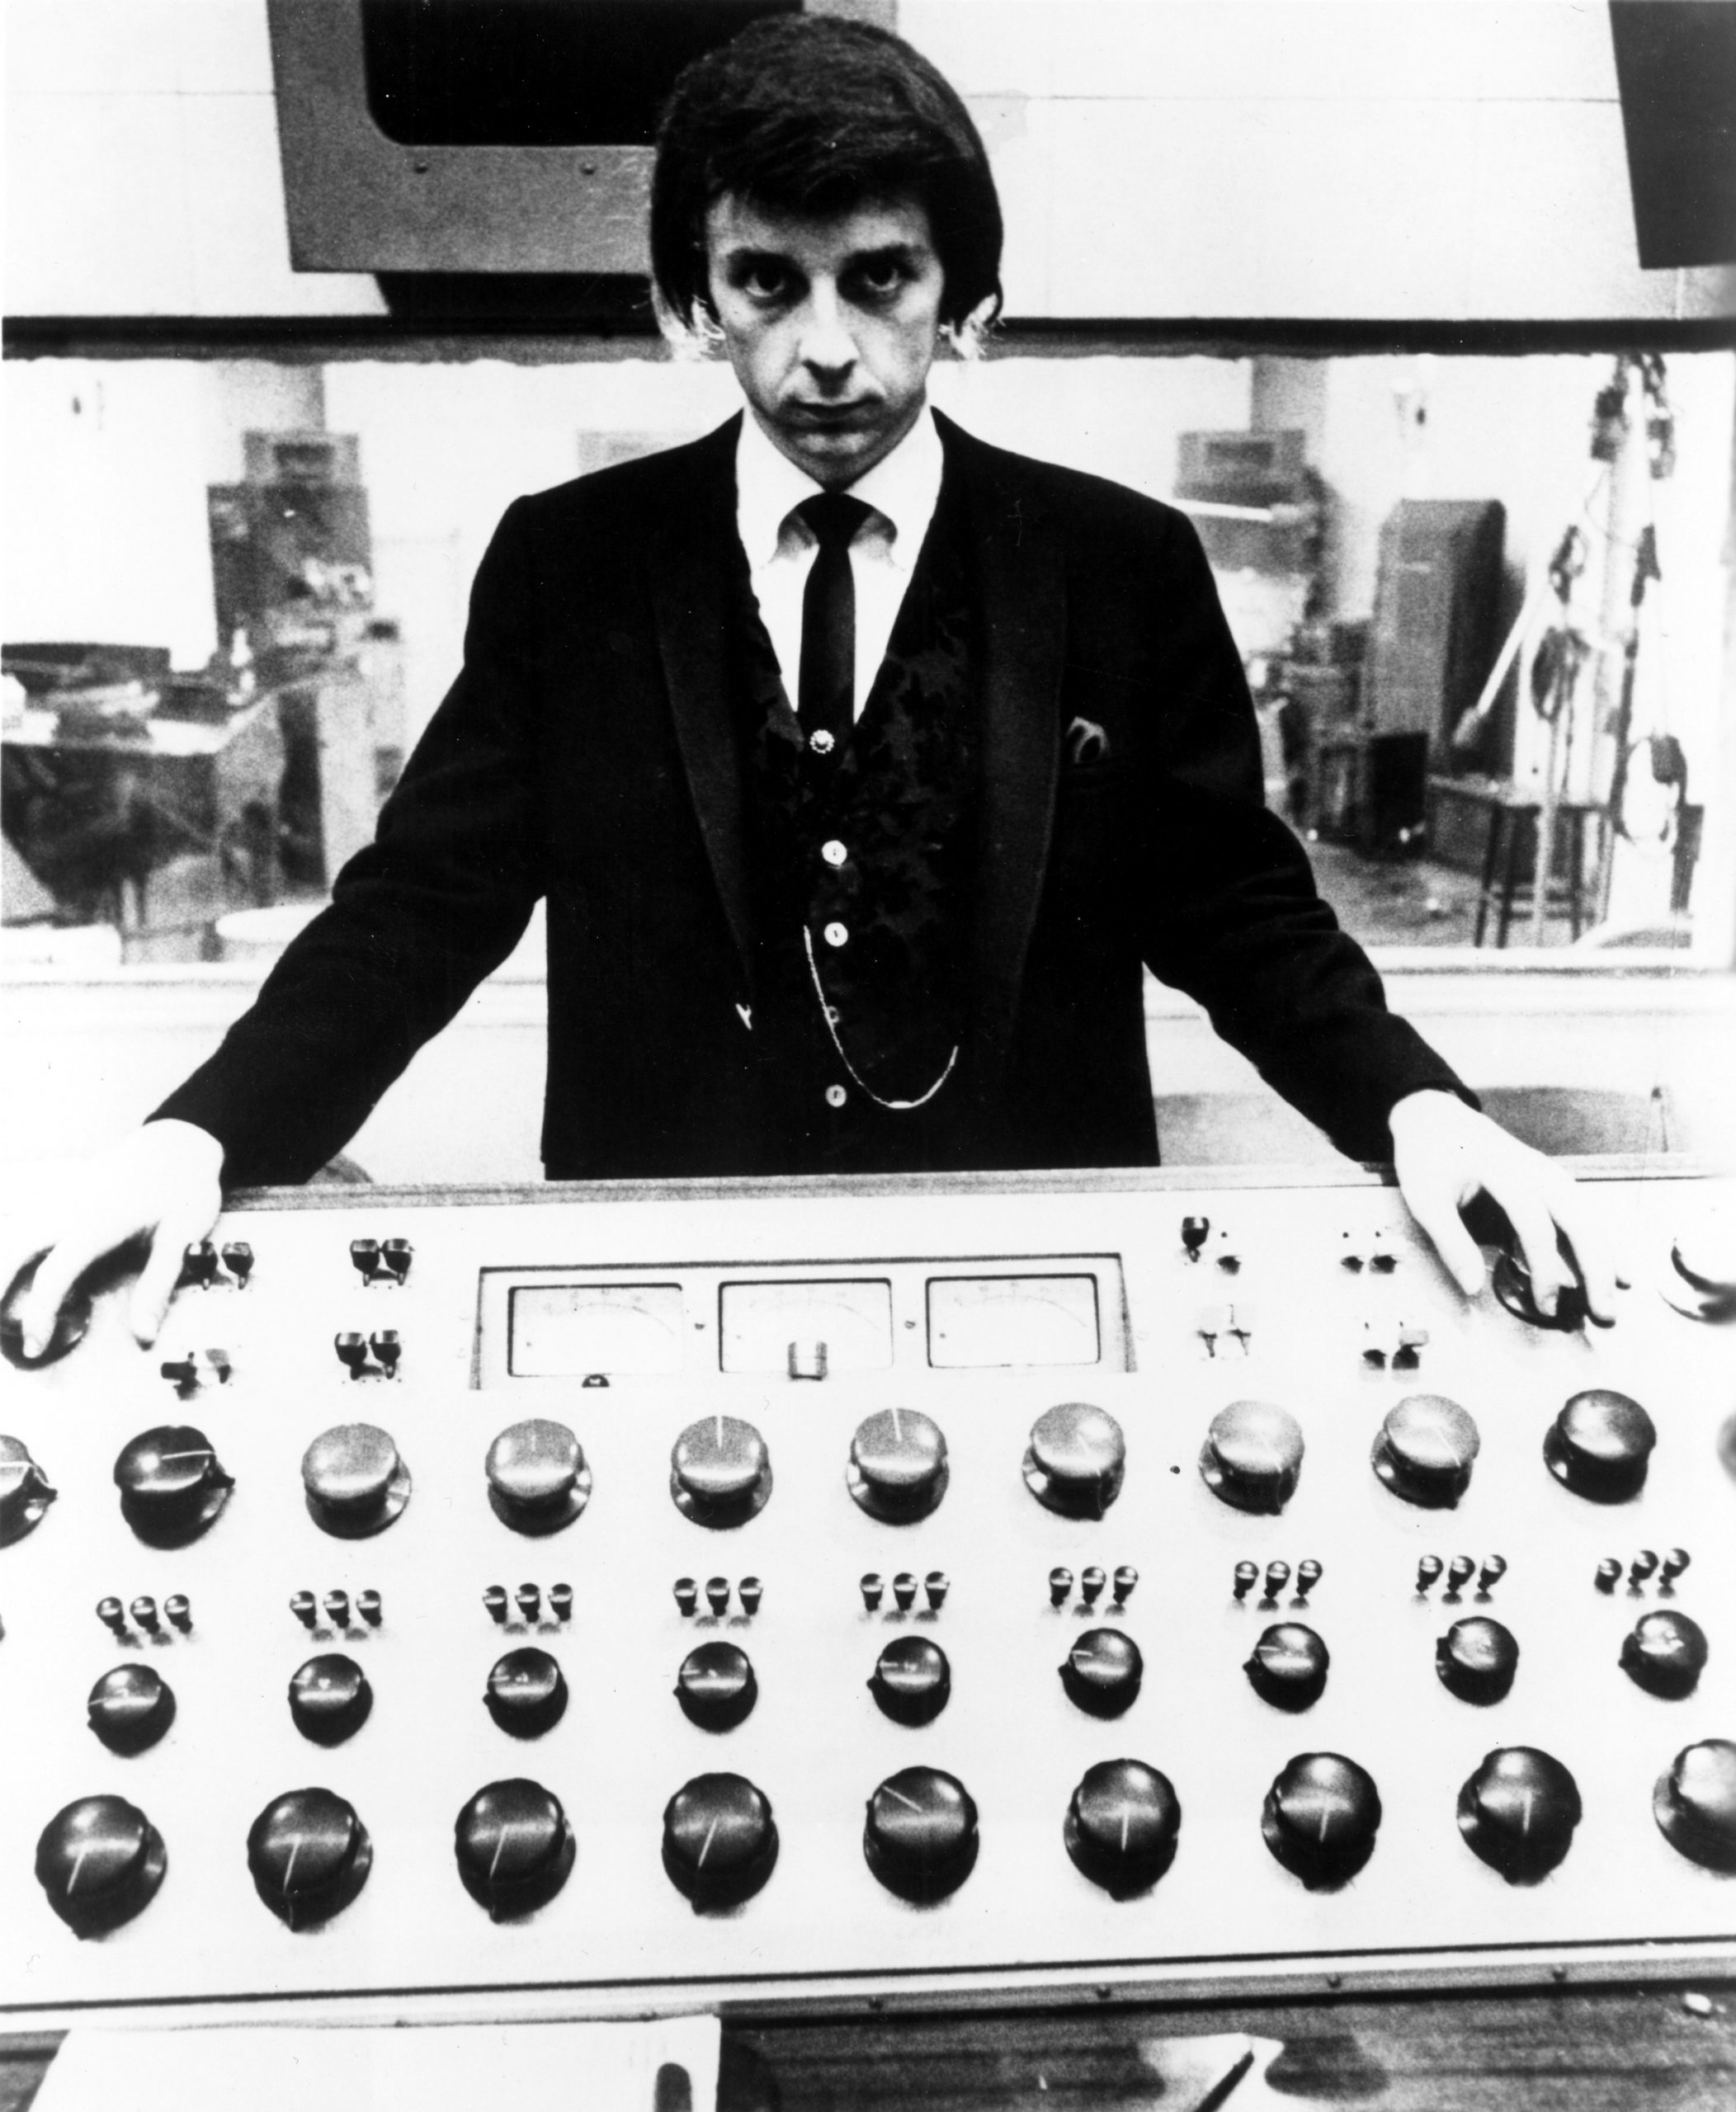 ¿Qué es la pared de sonido de Phil Spector y cómo cambió la música?